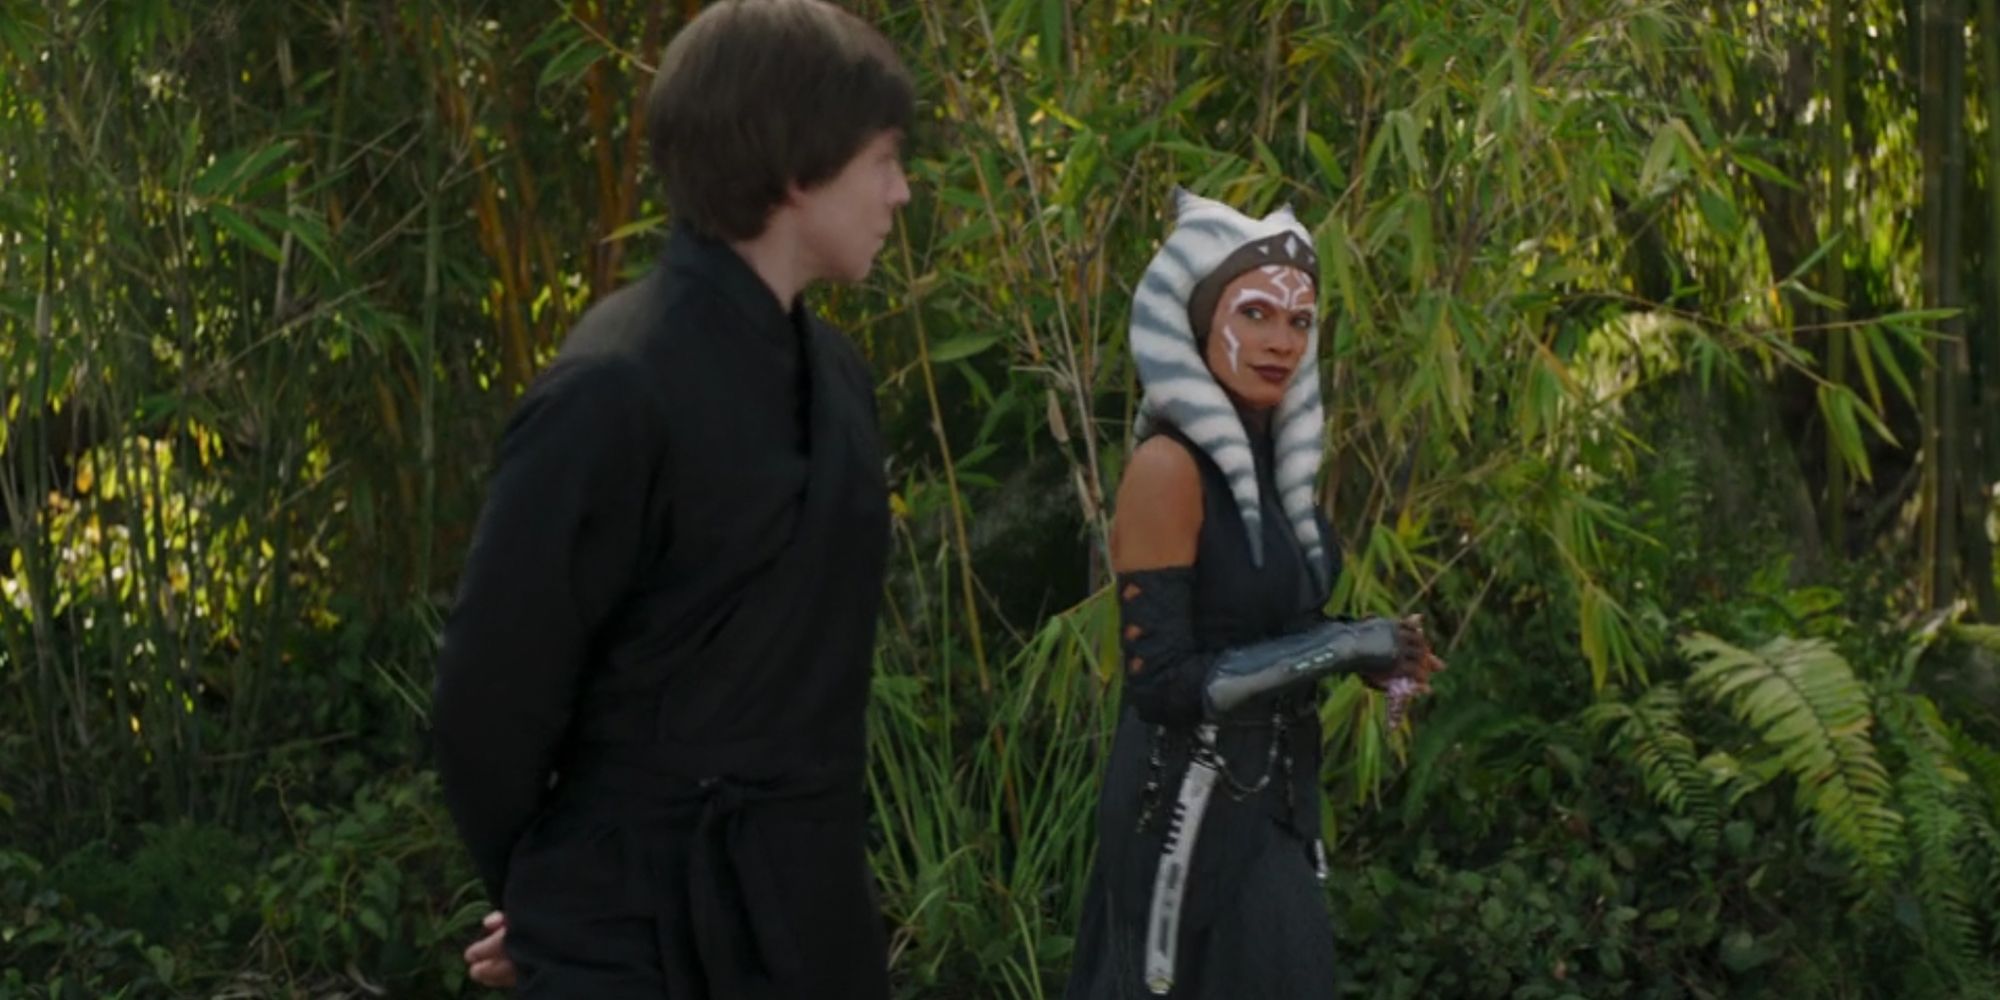 Luke Skywalker and Ahsoka Tano meet in The Book of Boba Fett.